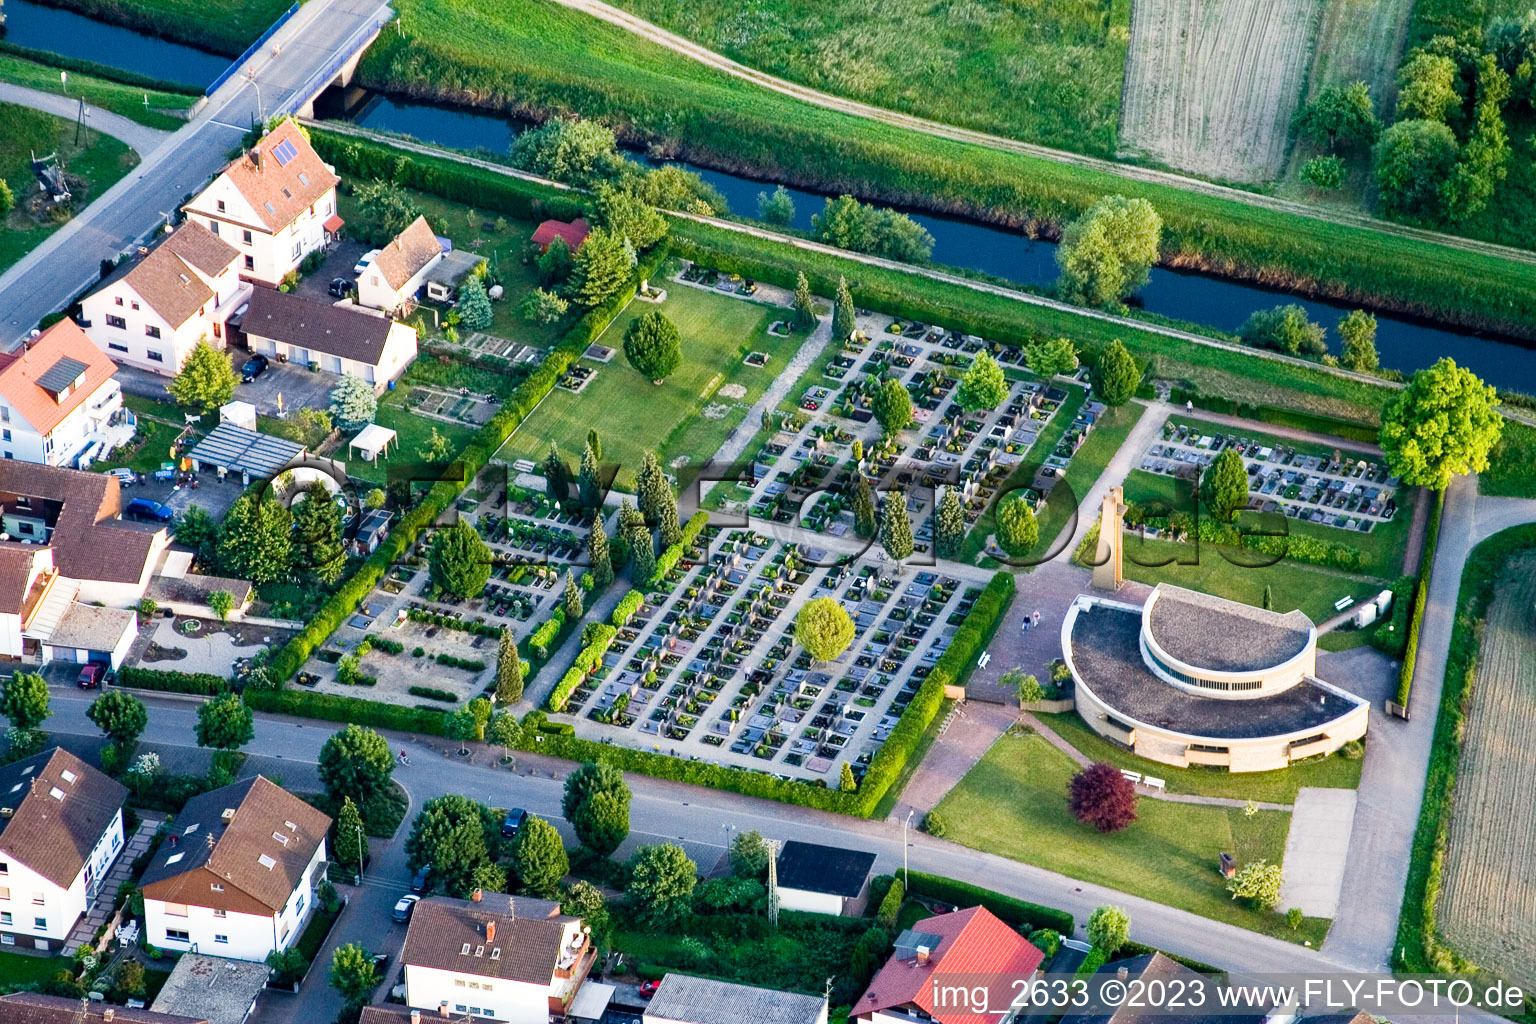 Vue aérienne de Cimetière à Neuburg dans le département Rhénanie-Palatinat, Allemagne